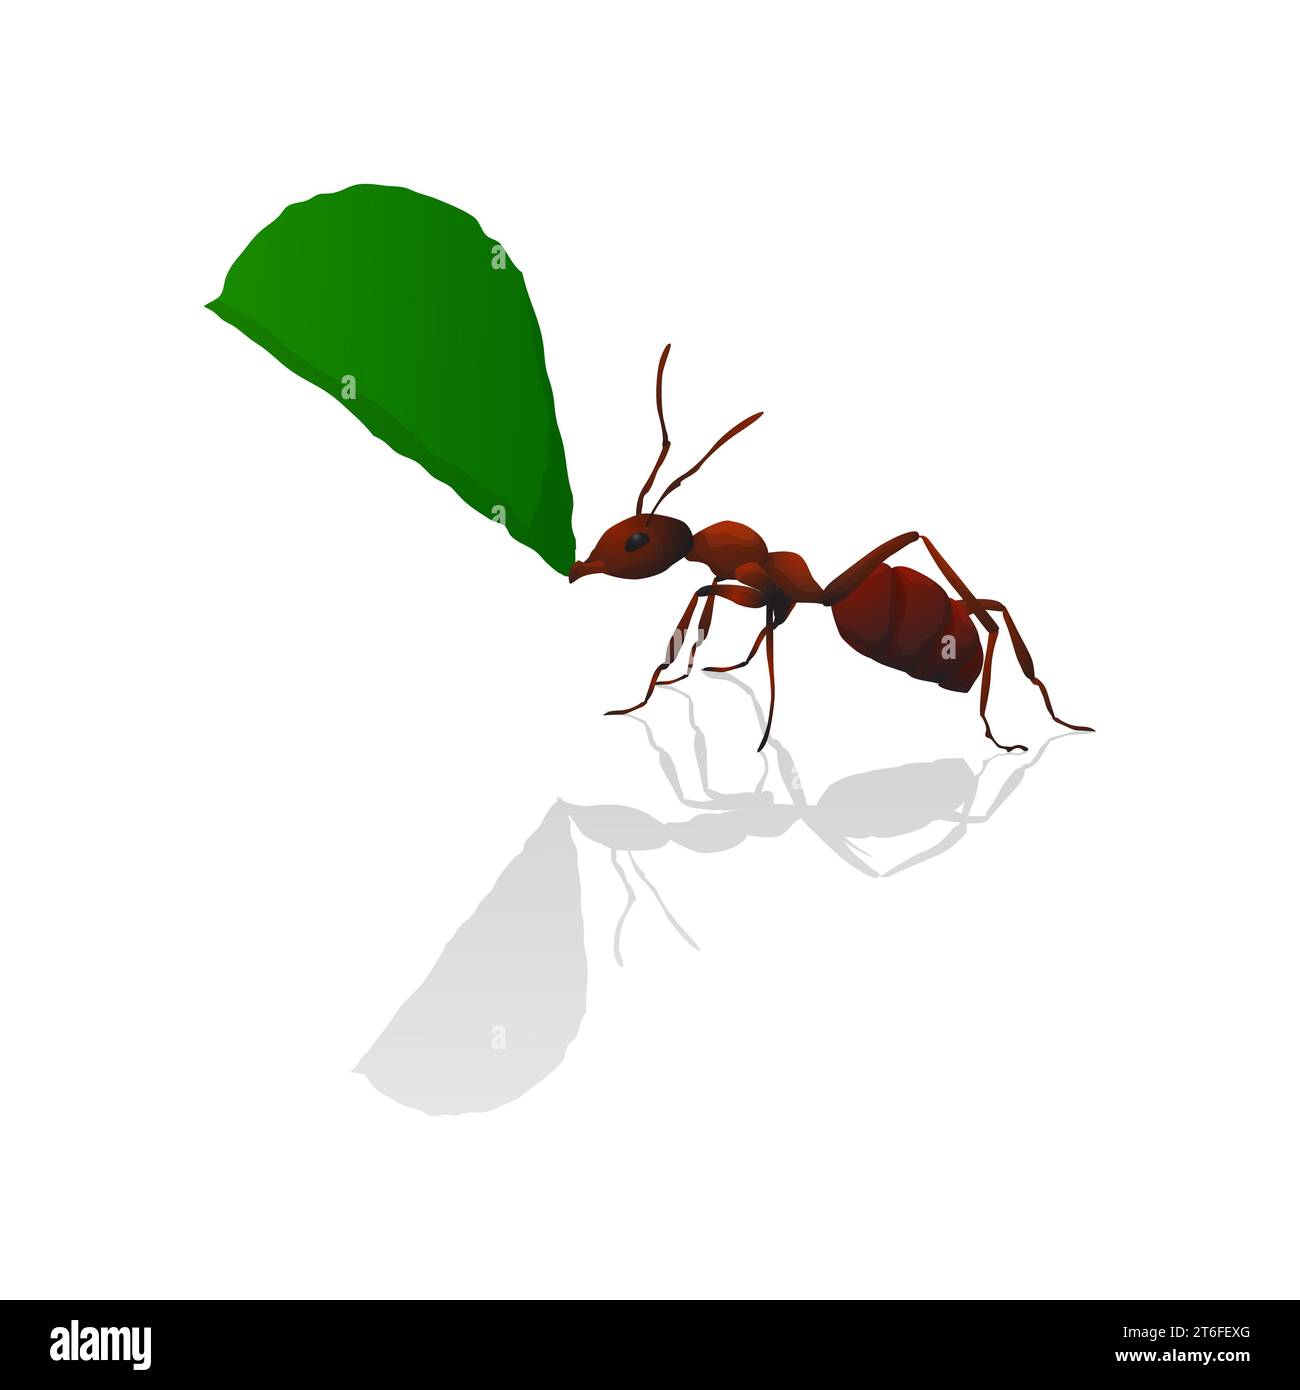 Fourmi brune tenant une feuille verte, illustration vectorielle isolée Banque D'Images